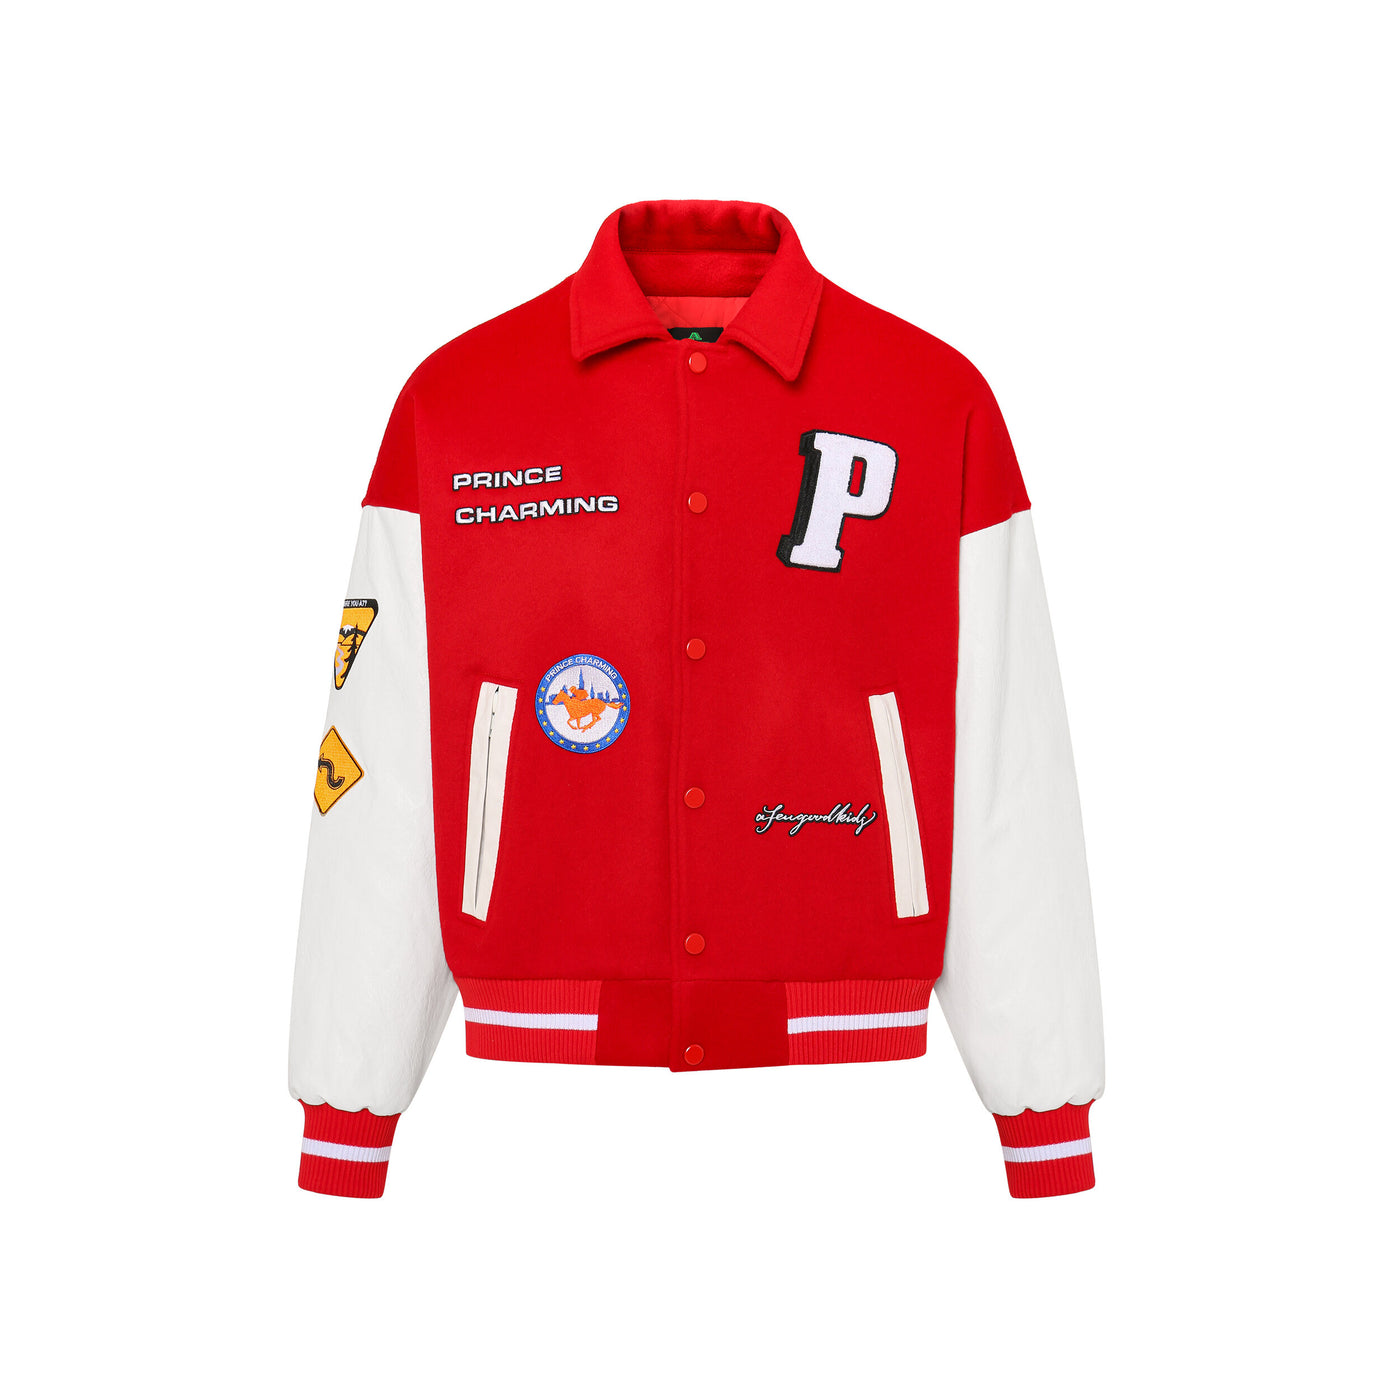 DONCARE (AFGK) "Prince Charming Varsity Jacket" - RED